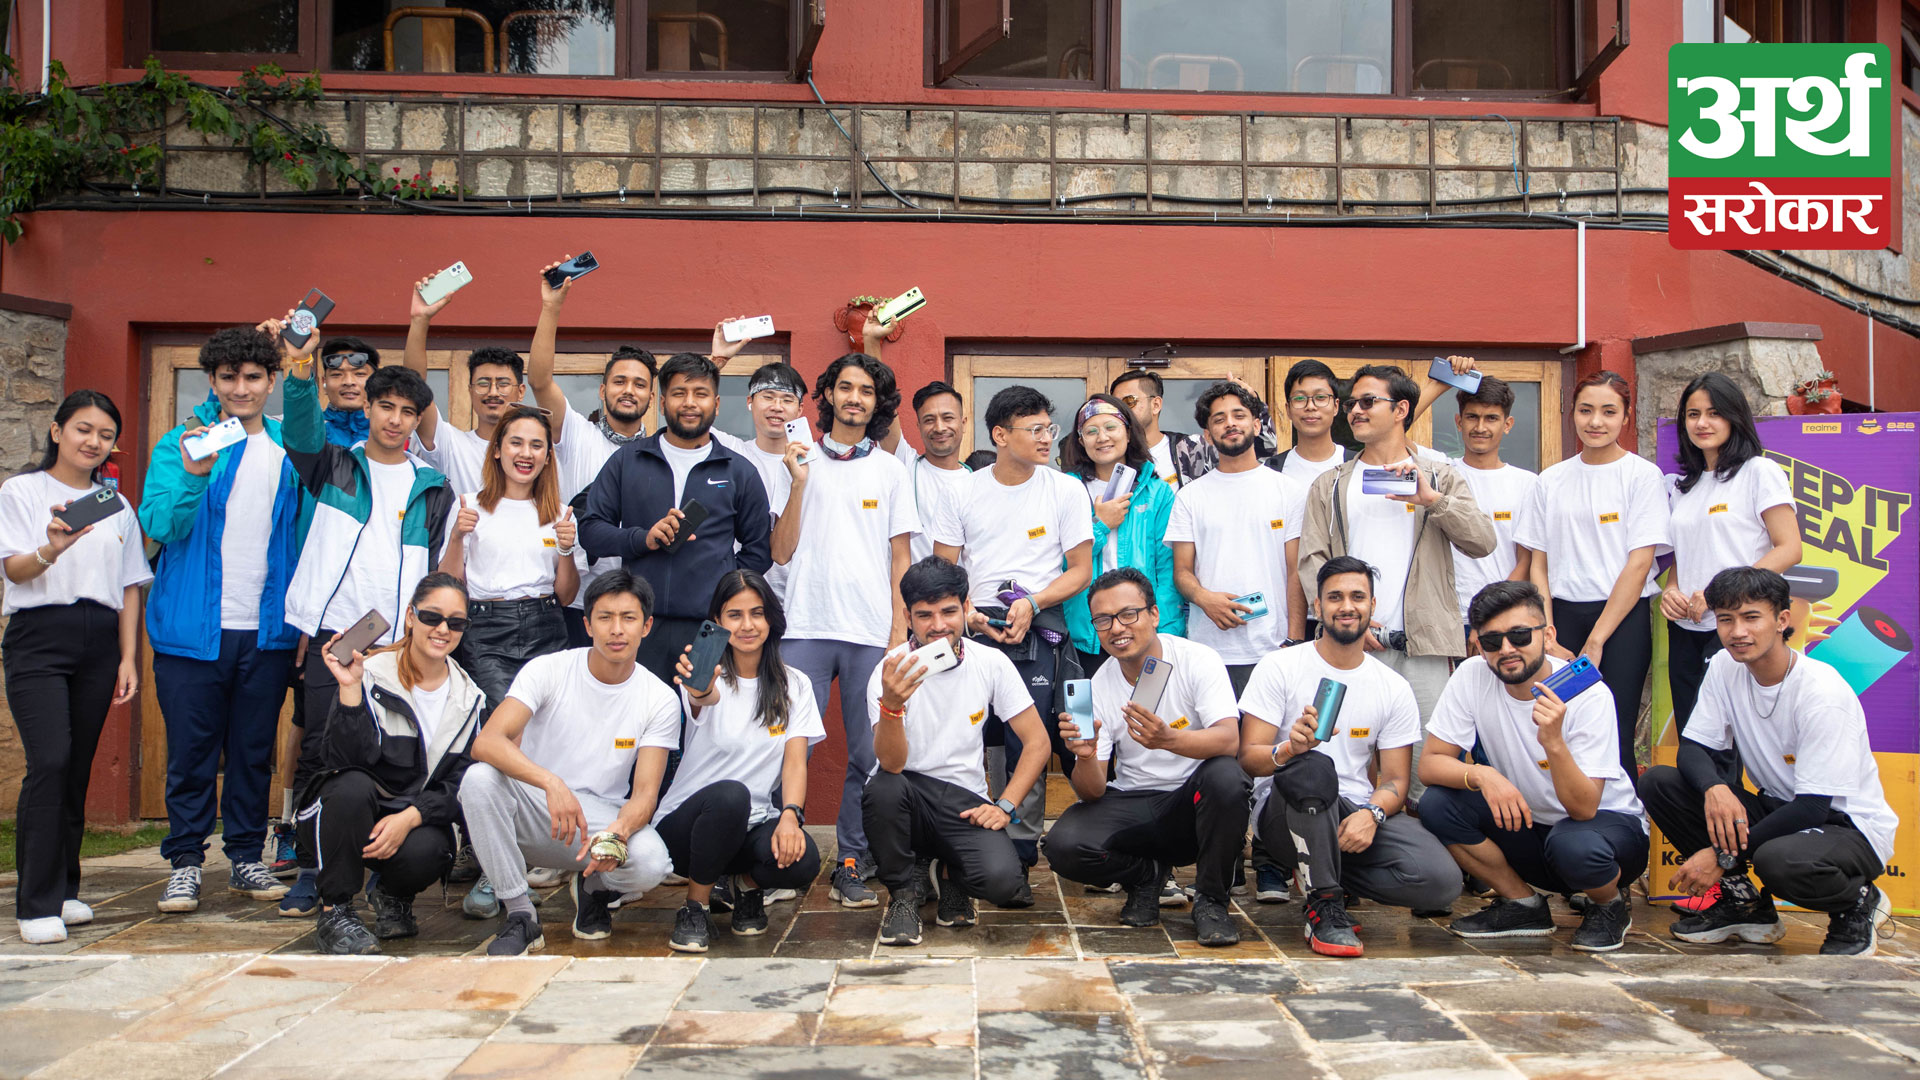 Realme organizes first 828 fan festival in Nepal